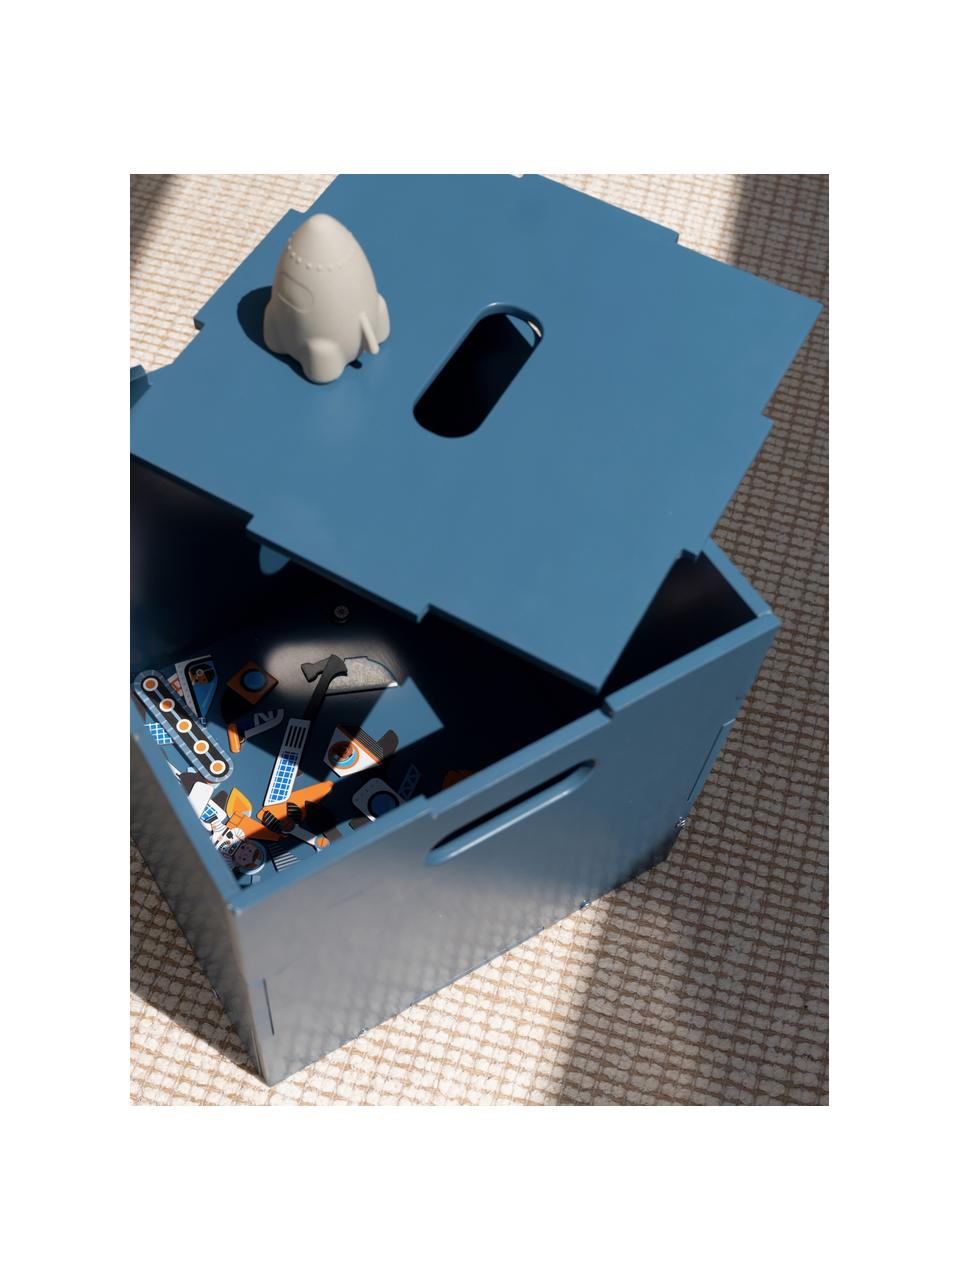 Holz-Aufbewahrungsbox Cube, Birkenholzfurnier, lackiert

Dieses Produkt wird aus nachhaltig gewonnenem, FSC®-zertifiziertem Holz gefertigt., Graublau, B 36 x T 36 cm